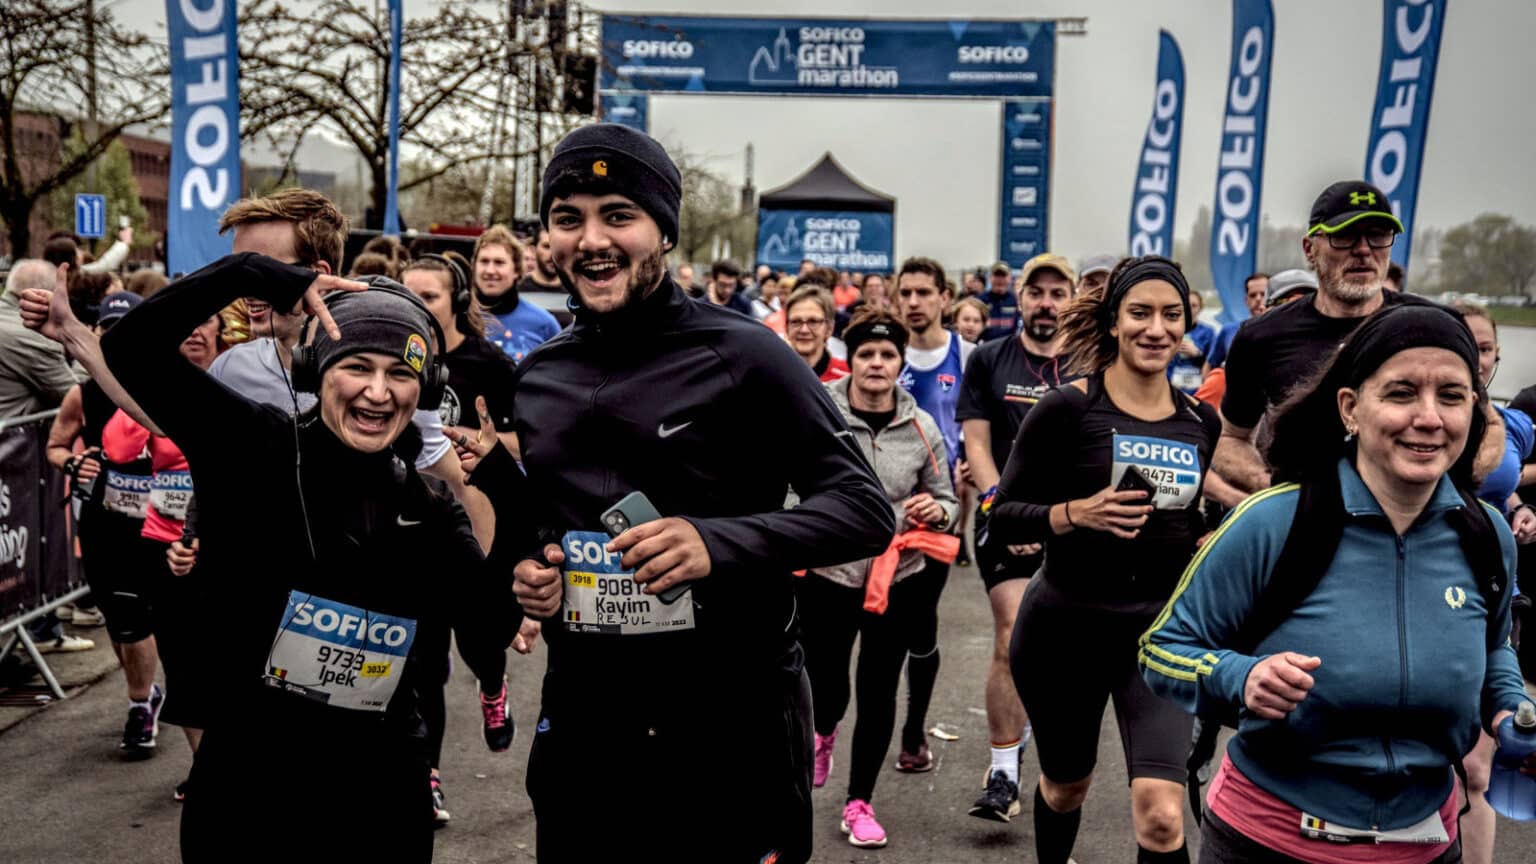 Sofico Gent Marathon opent de inschrijvingen voor 2023 RunningBE